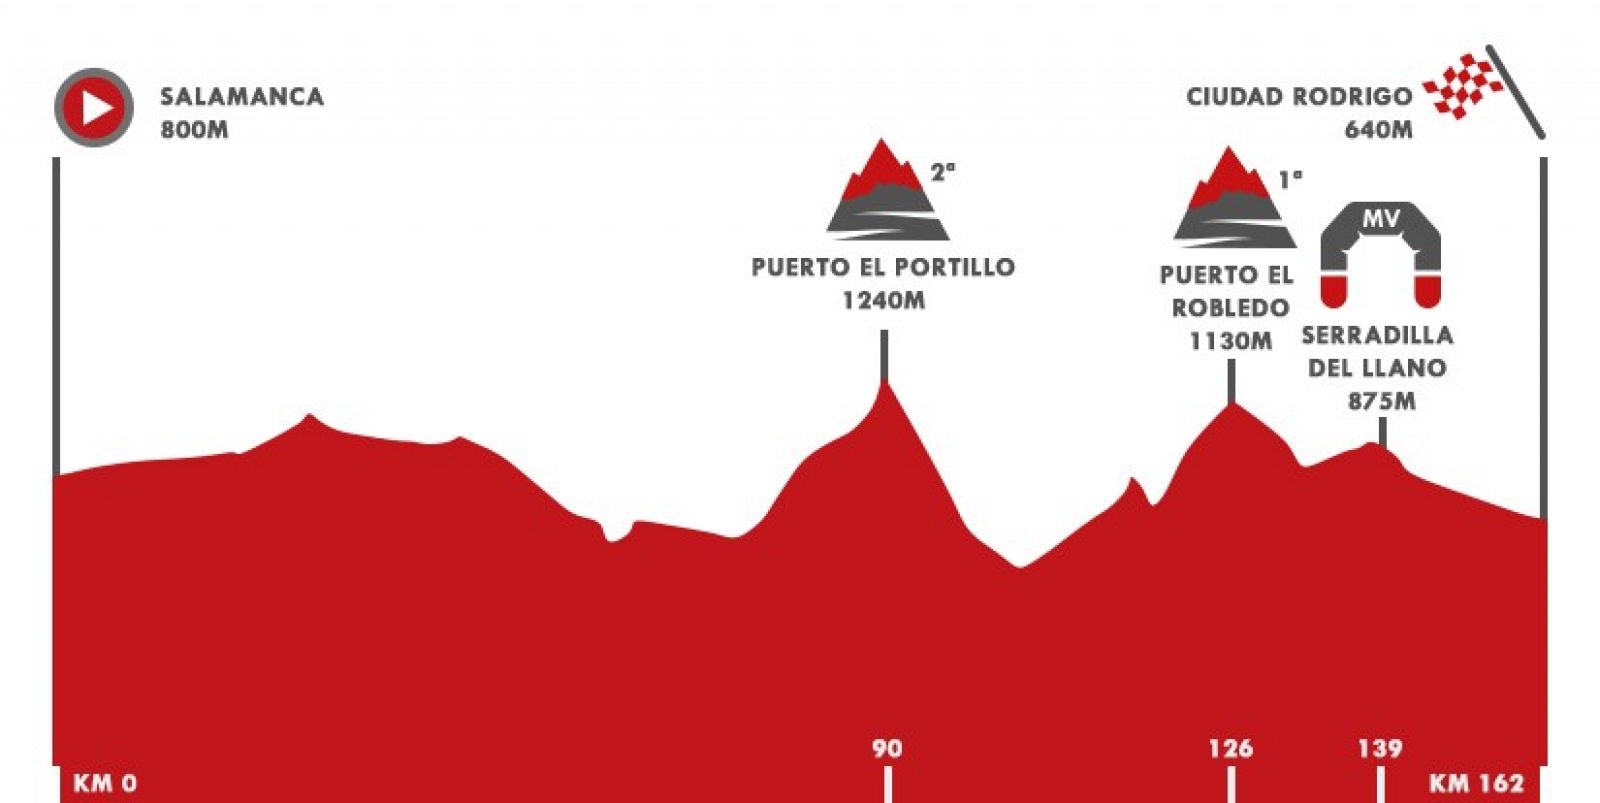 Vuelta 2020 Etapa 16 | Perfil etapa 16 entre Salamanca y Ciudad Rodrigo